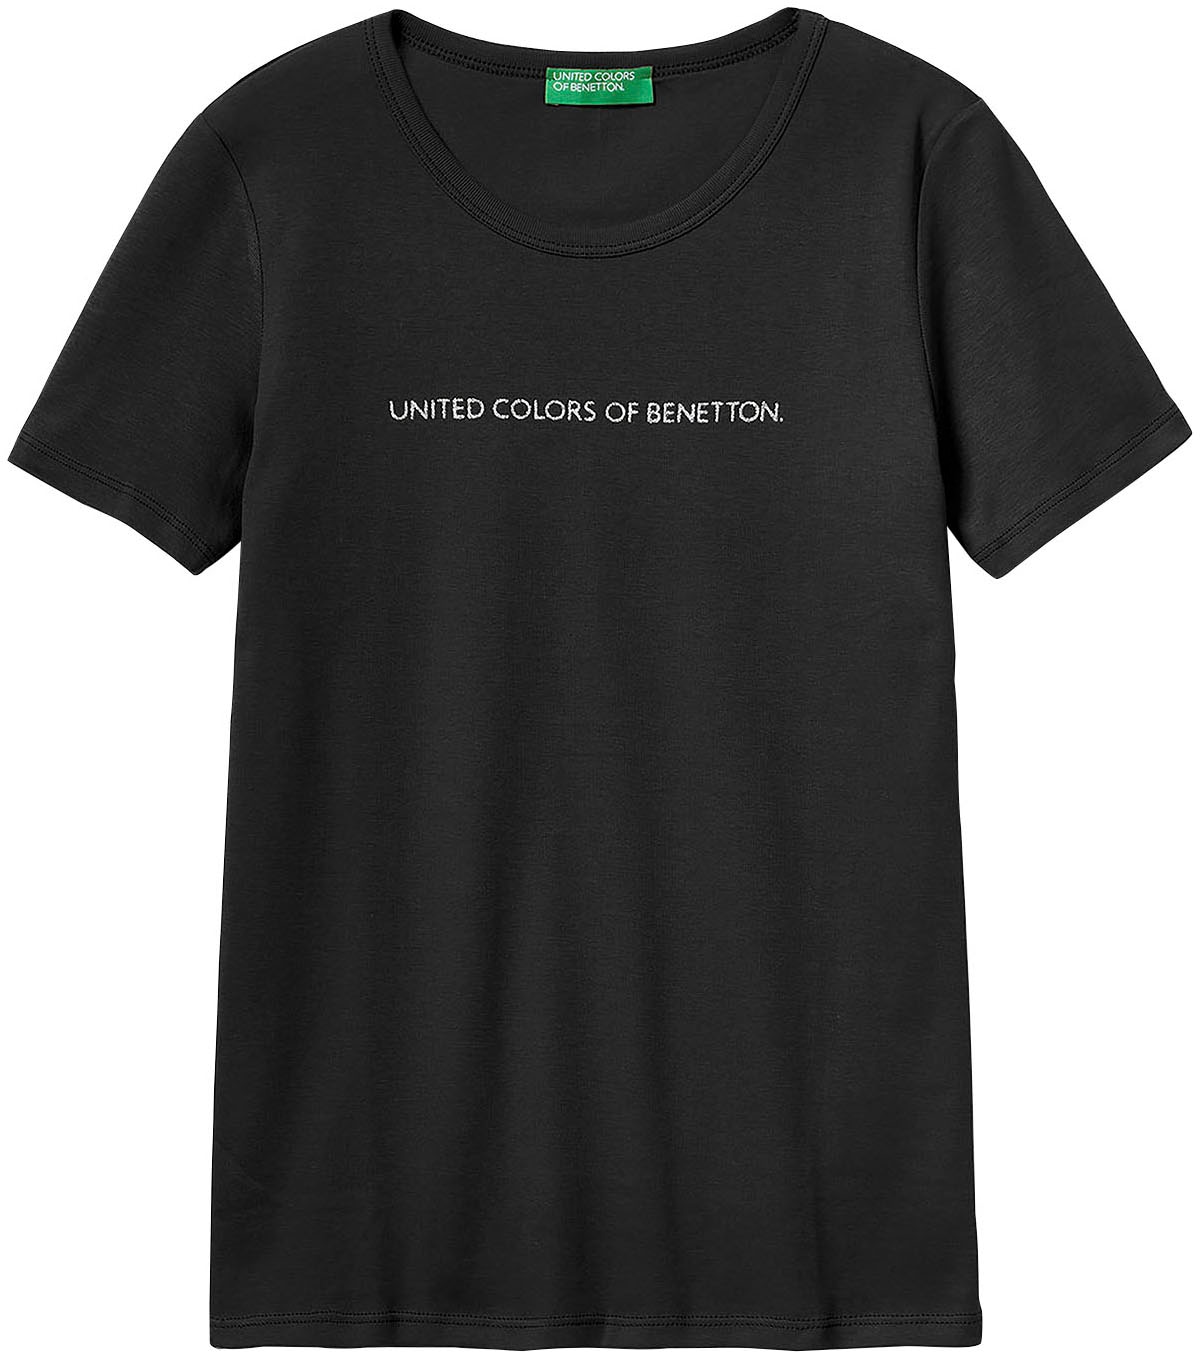 glitzerndem United bequem T-Shirt, of vorn mit Colors Benetton kaufen Label-Print